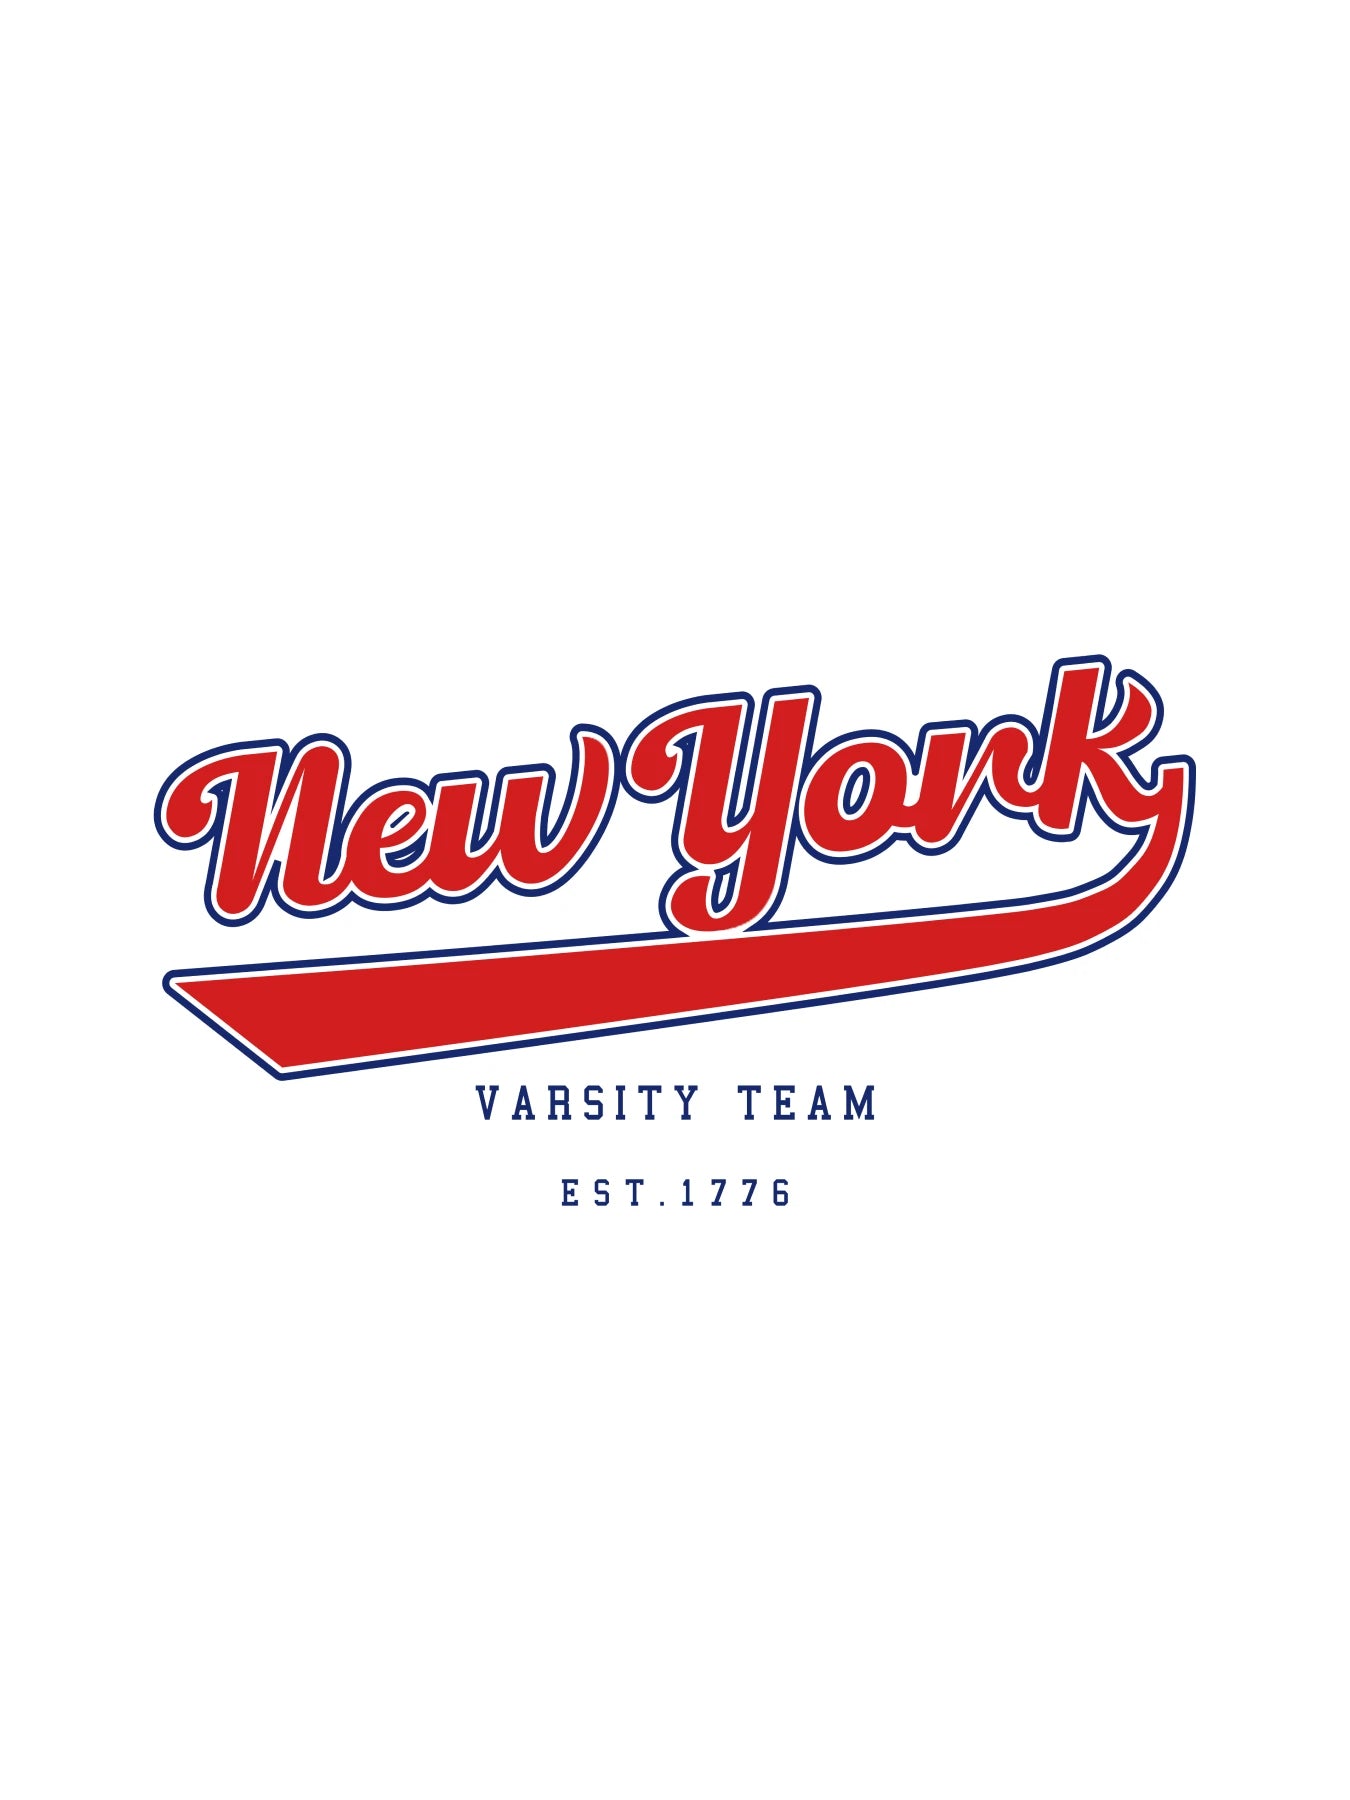 New York - Varsity Team